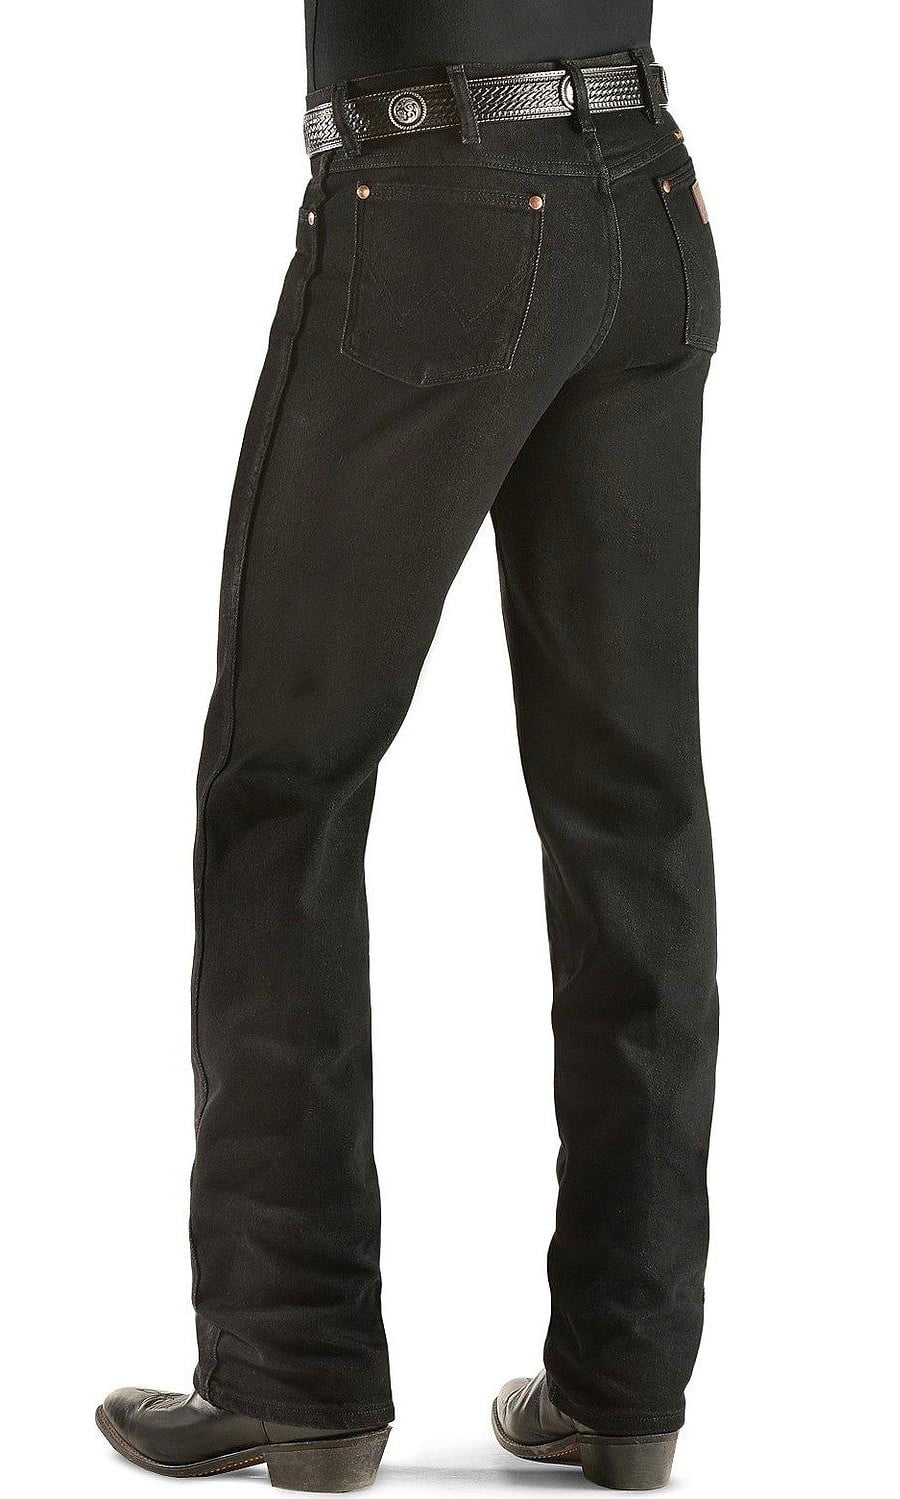 black wrangler jeans walmart